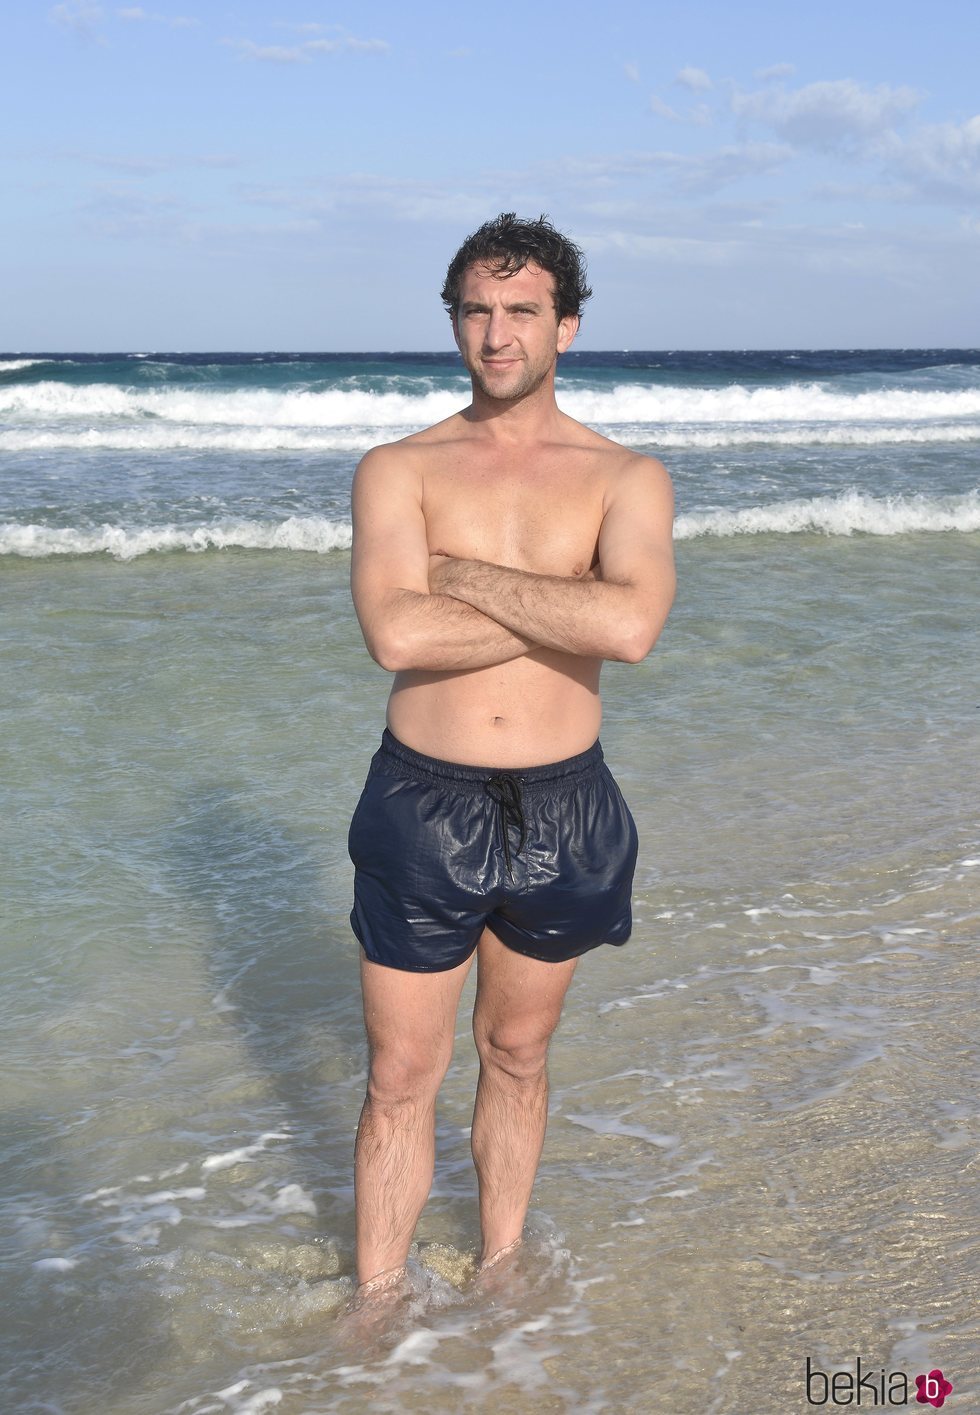 Antonio Pavón posando en la playa en la foto oficial de 'Supervivientes 2020'